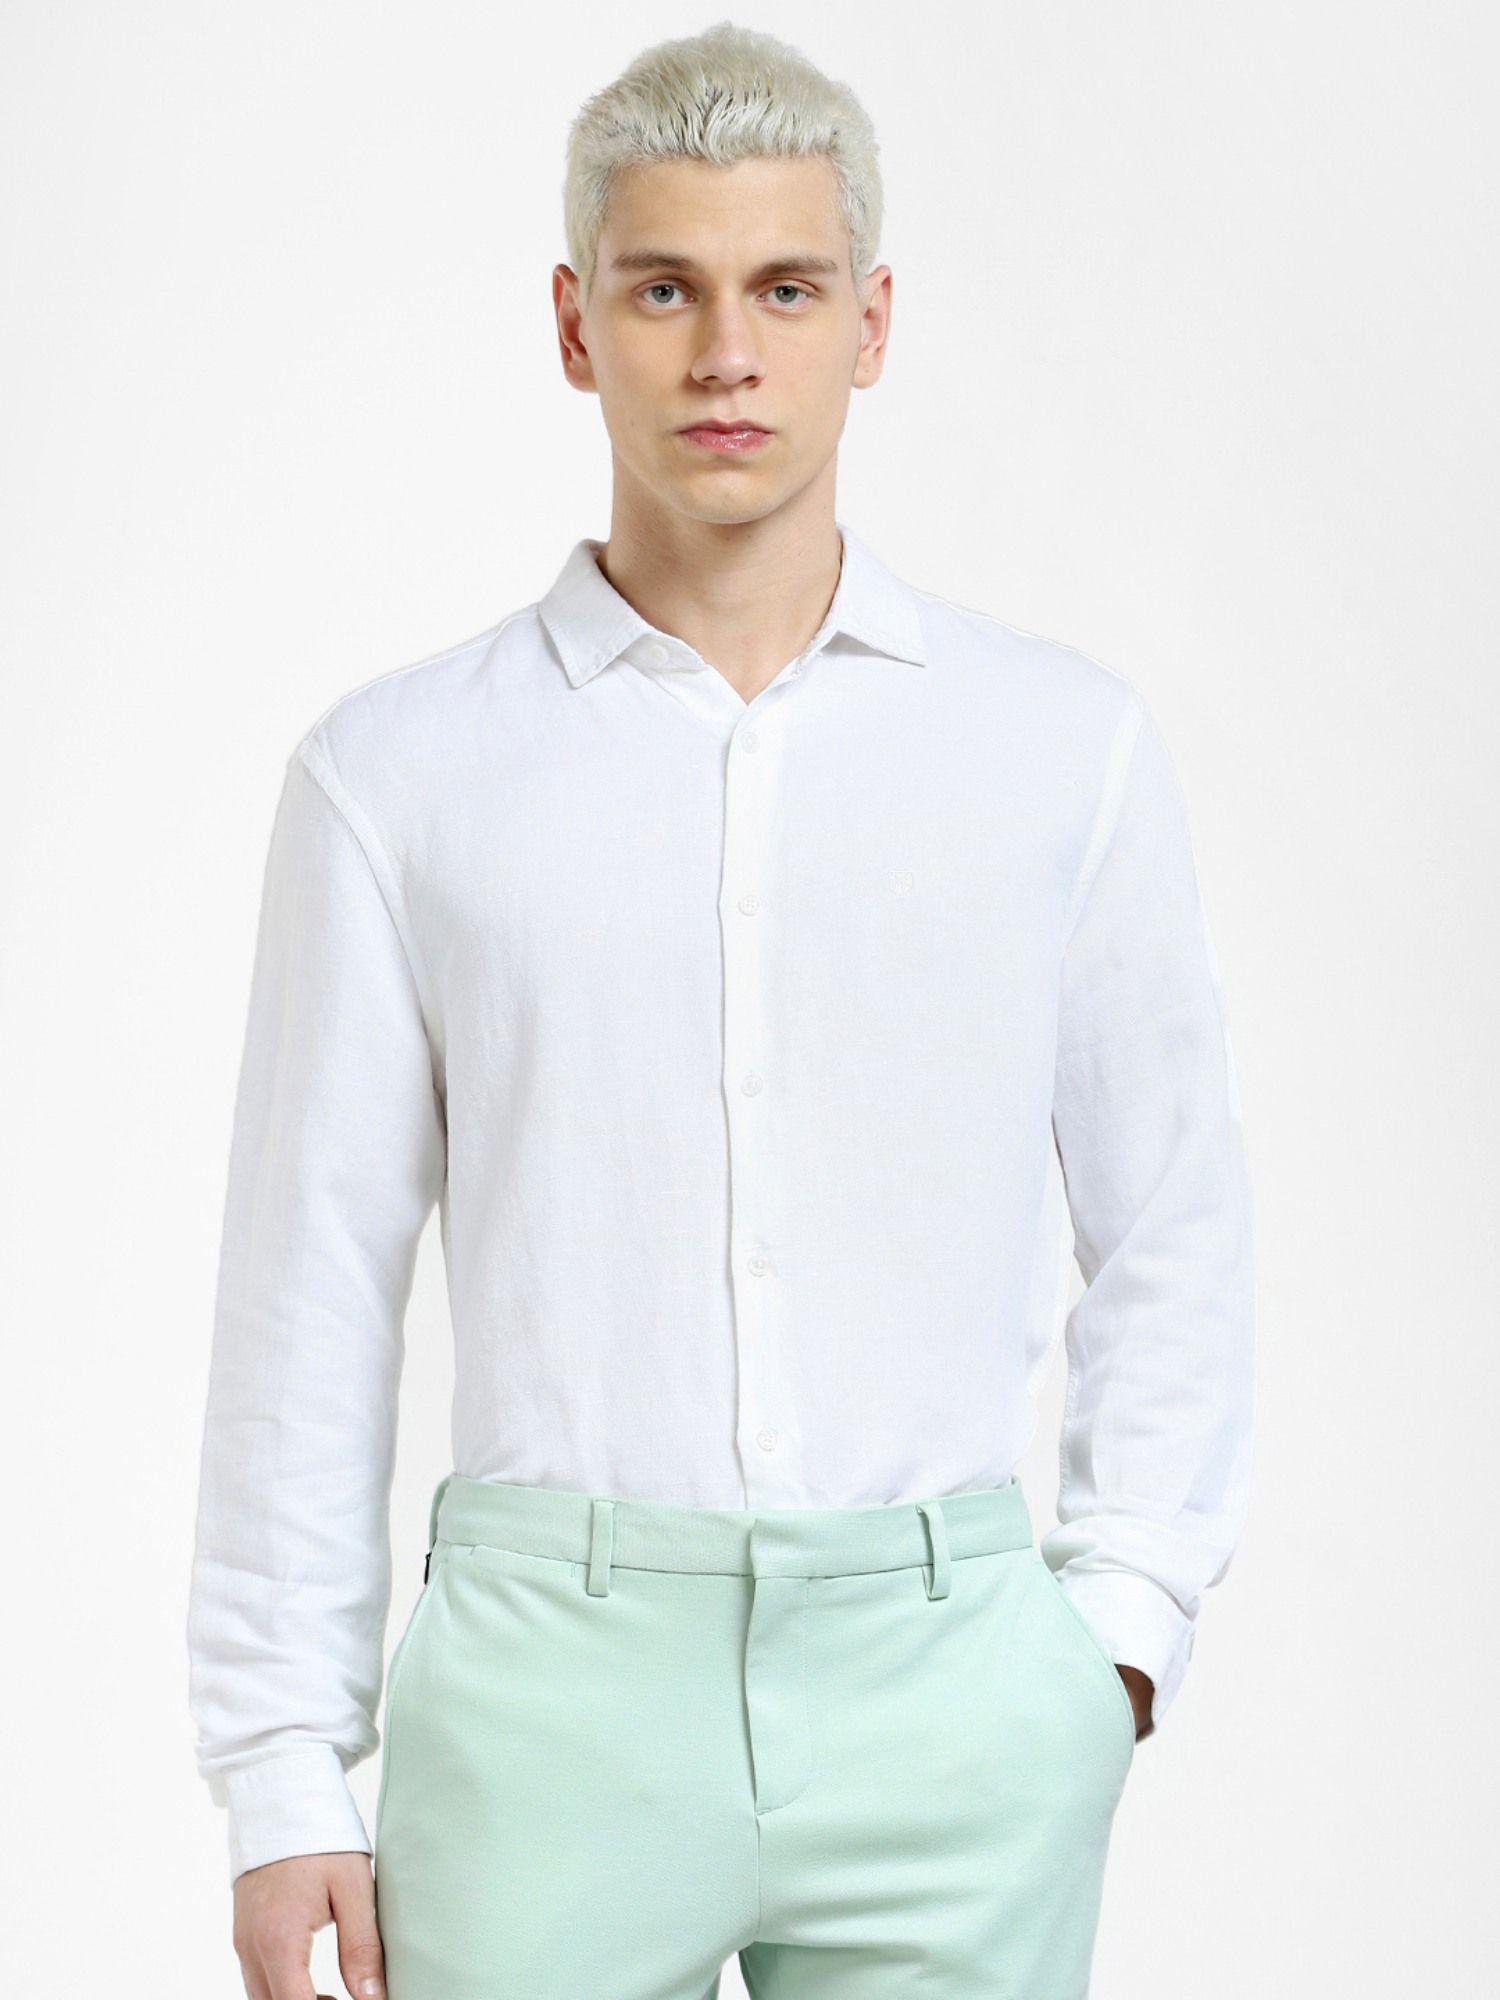 white-full-sleeves-shirt